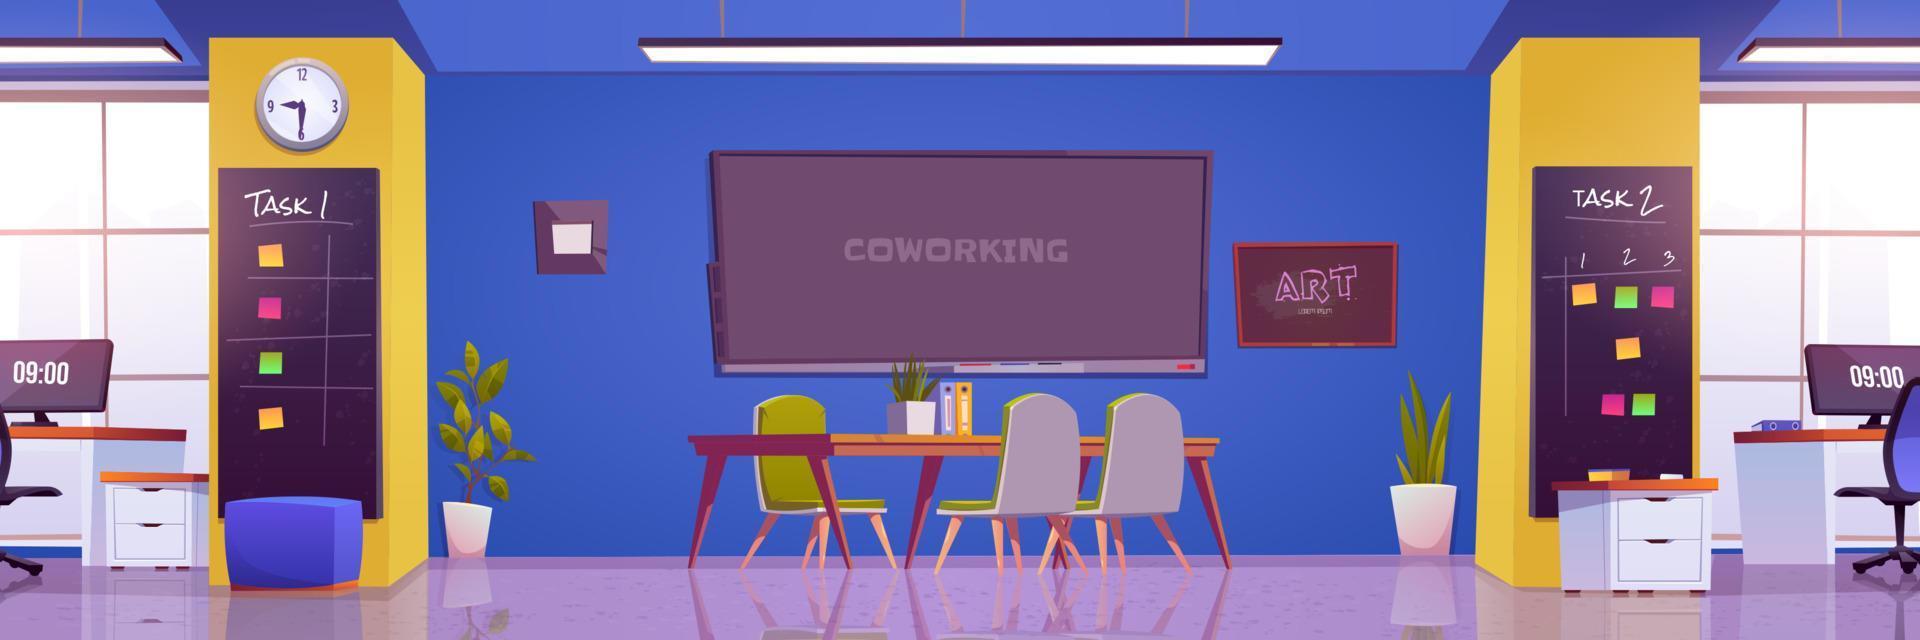 oficina de coworking, interior del lugar de trabajo, sala de juntas vector